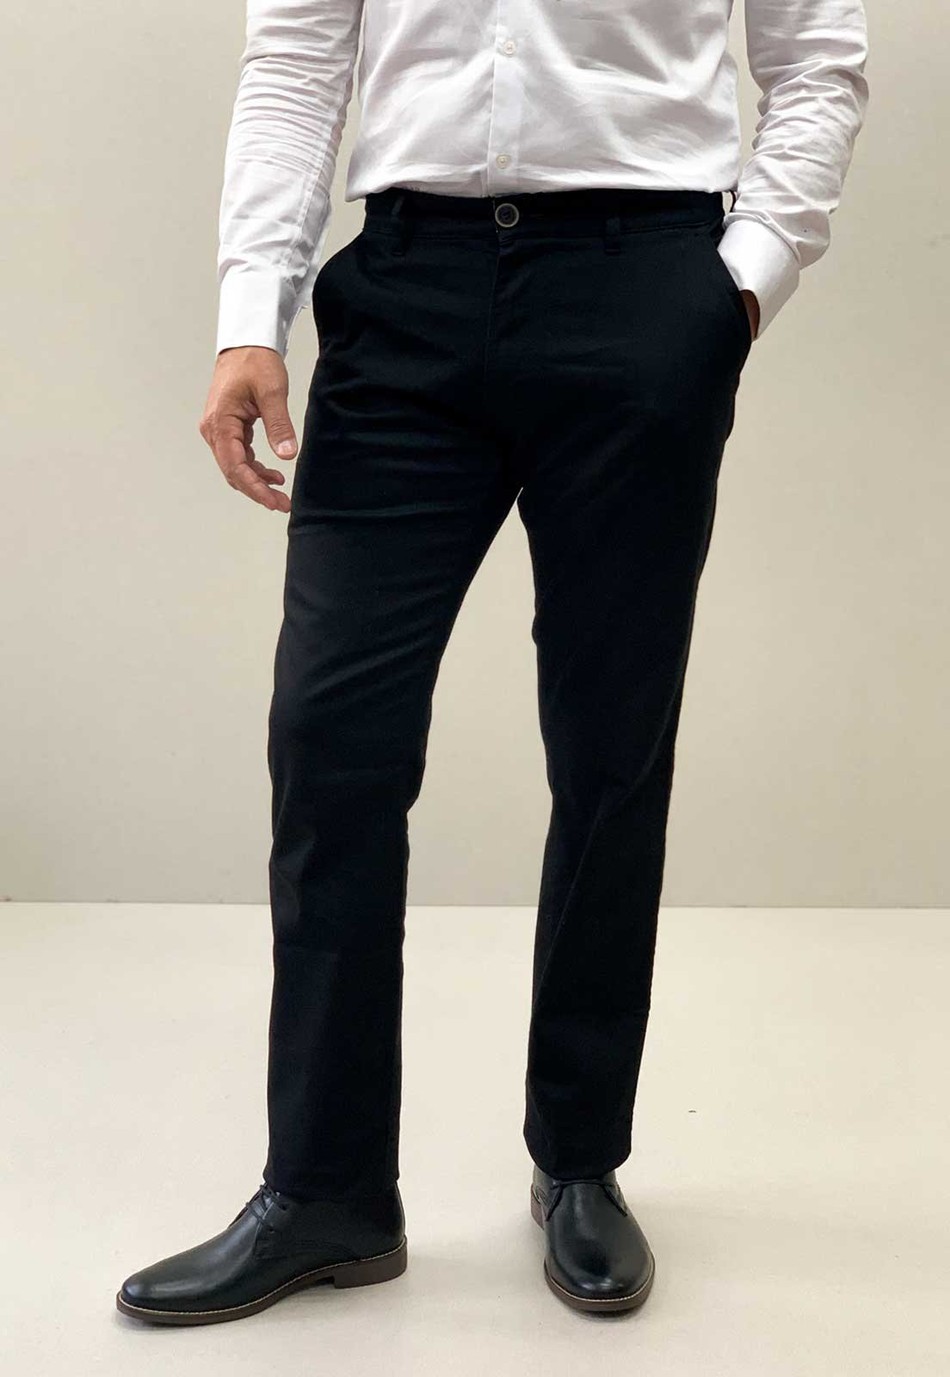 Calça jeans masculina preta com personalização lateral